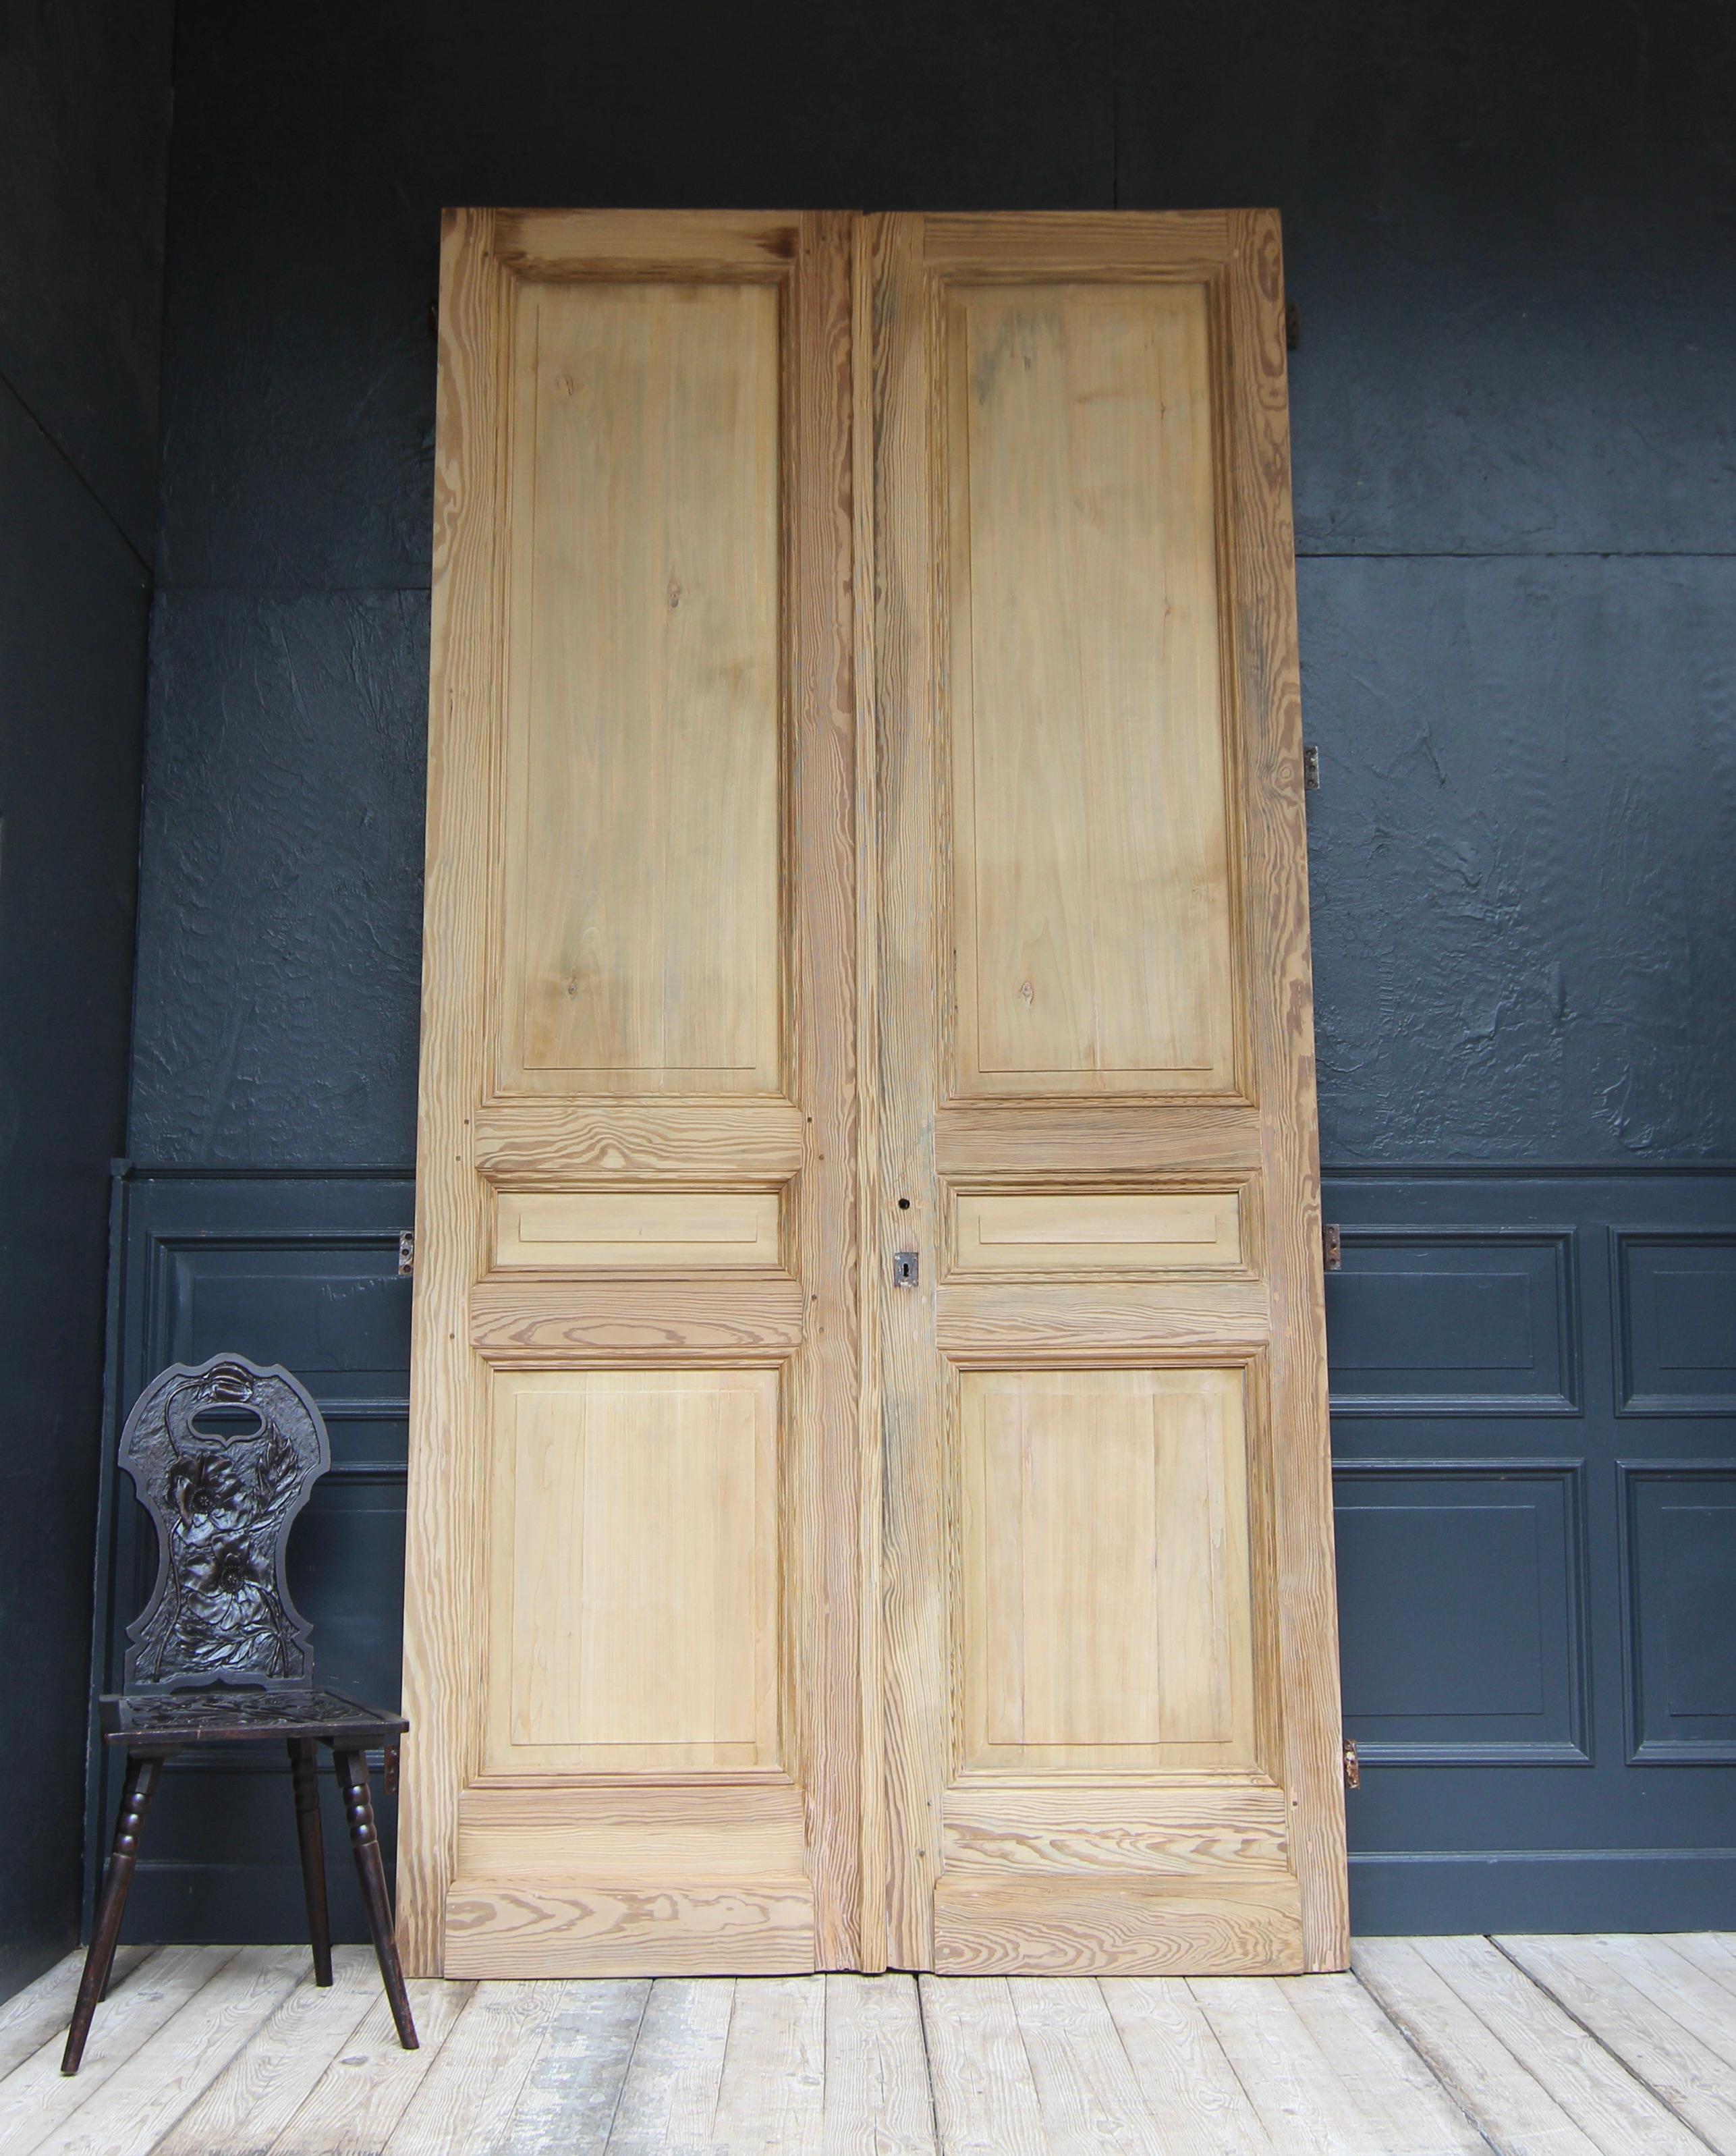 Außergewöhnlich hohe französische Doppeltür aus dem frühen 20. Jahrhundert, wahrscheinlich um 1910. Solide aus Kiefer gefertigt.

Zweiflügelige Wohnungstür in Rahmenkonstruktion mit 3 Füllungen pro Türflügel.

Die Doppeltür kann mit 4